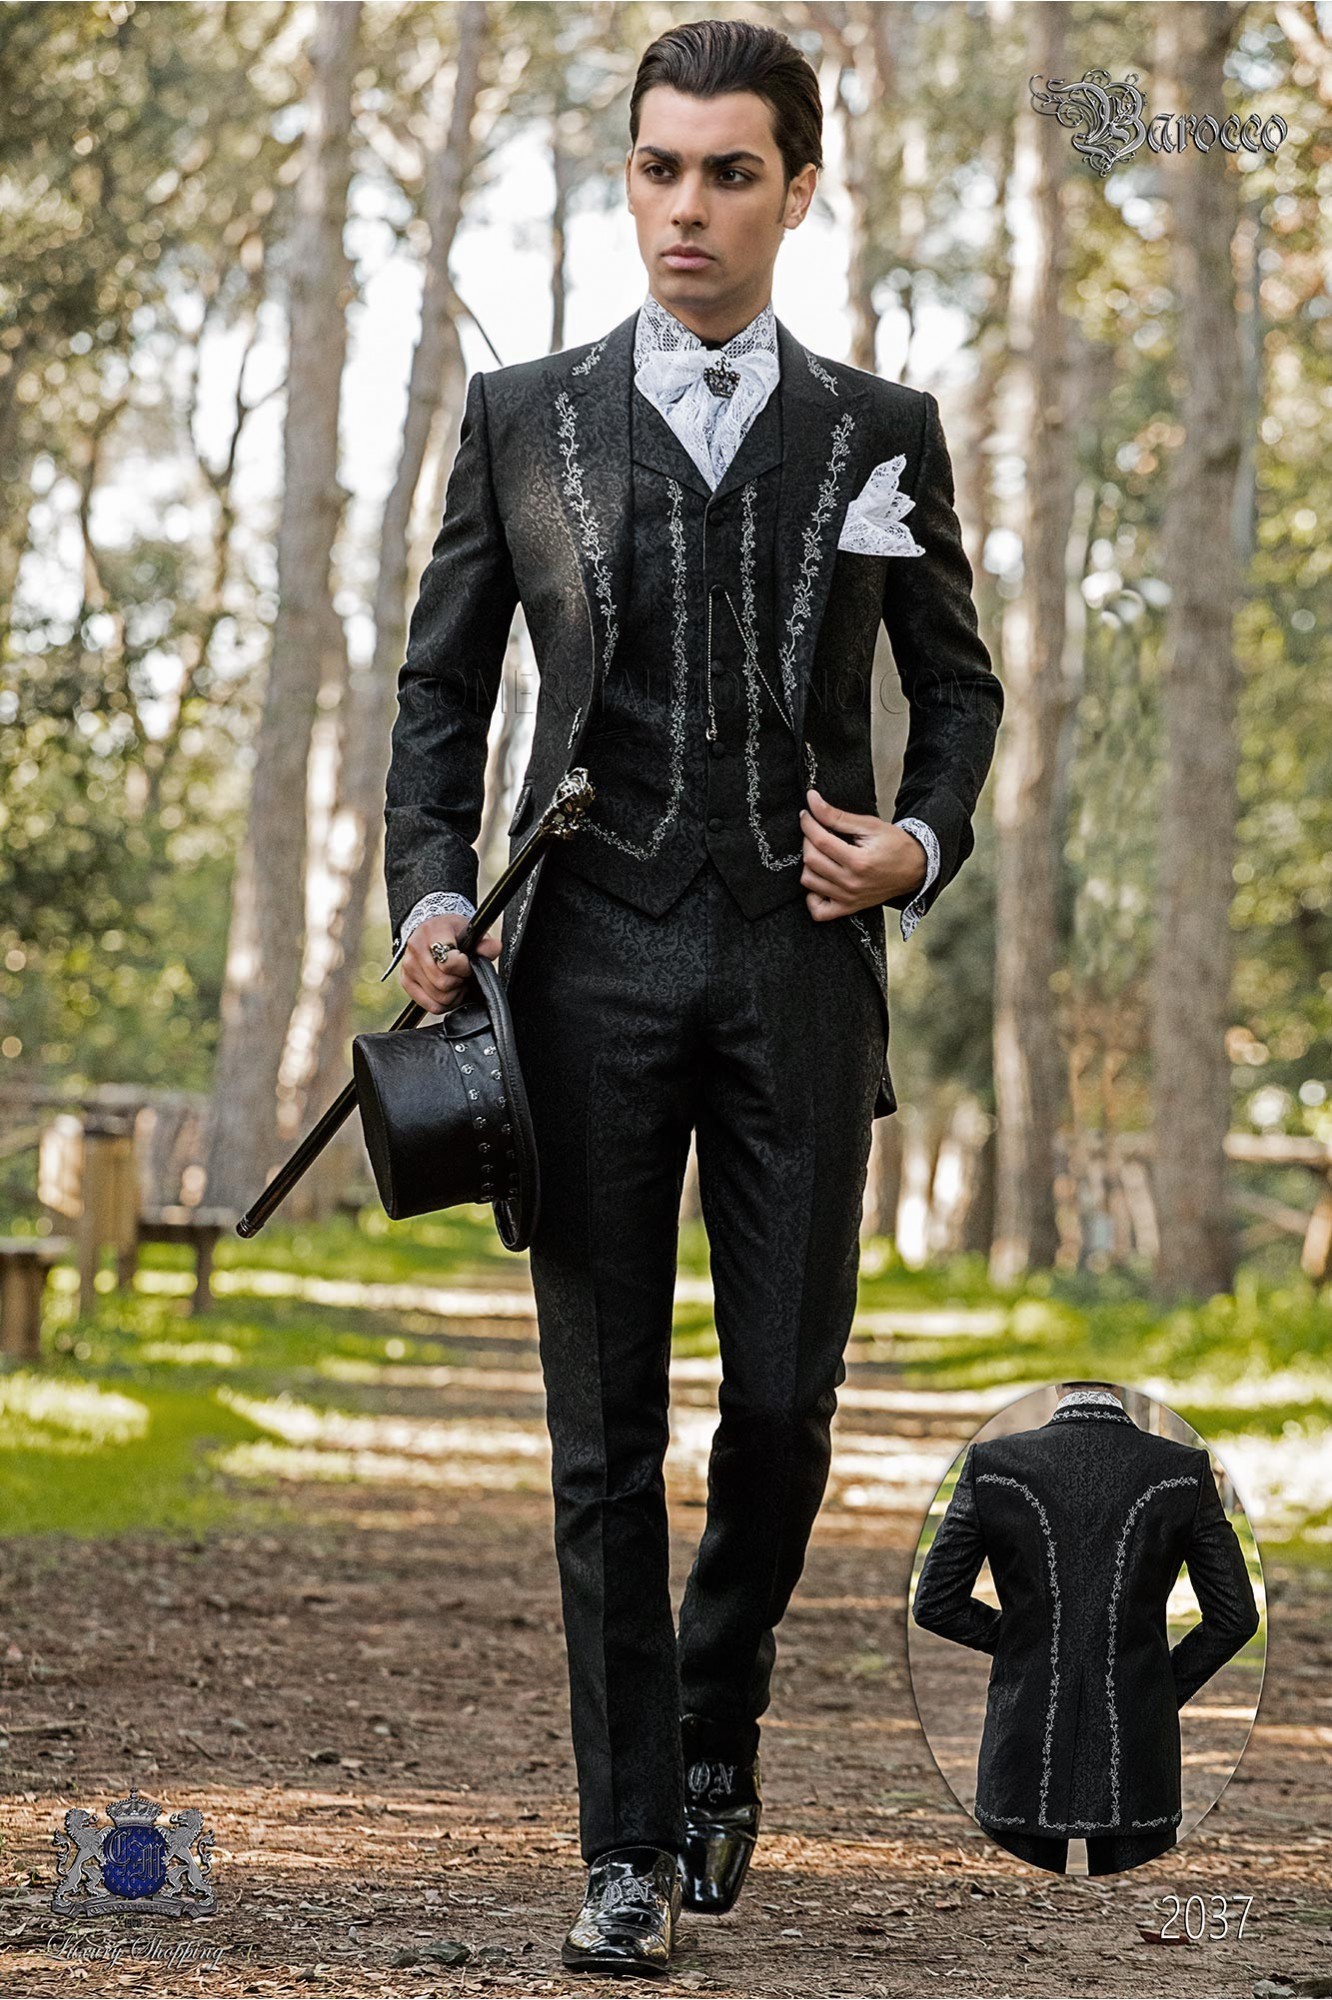 levita de época en tejido jacquard negro con bordados plateados y broche de cristal modelo: 2037 Mario Moyano colección Barroco